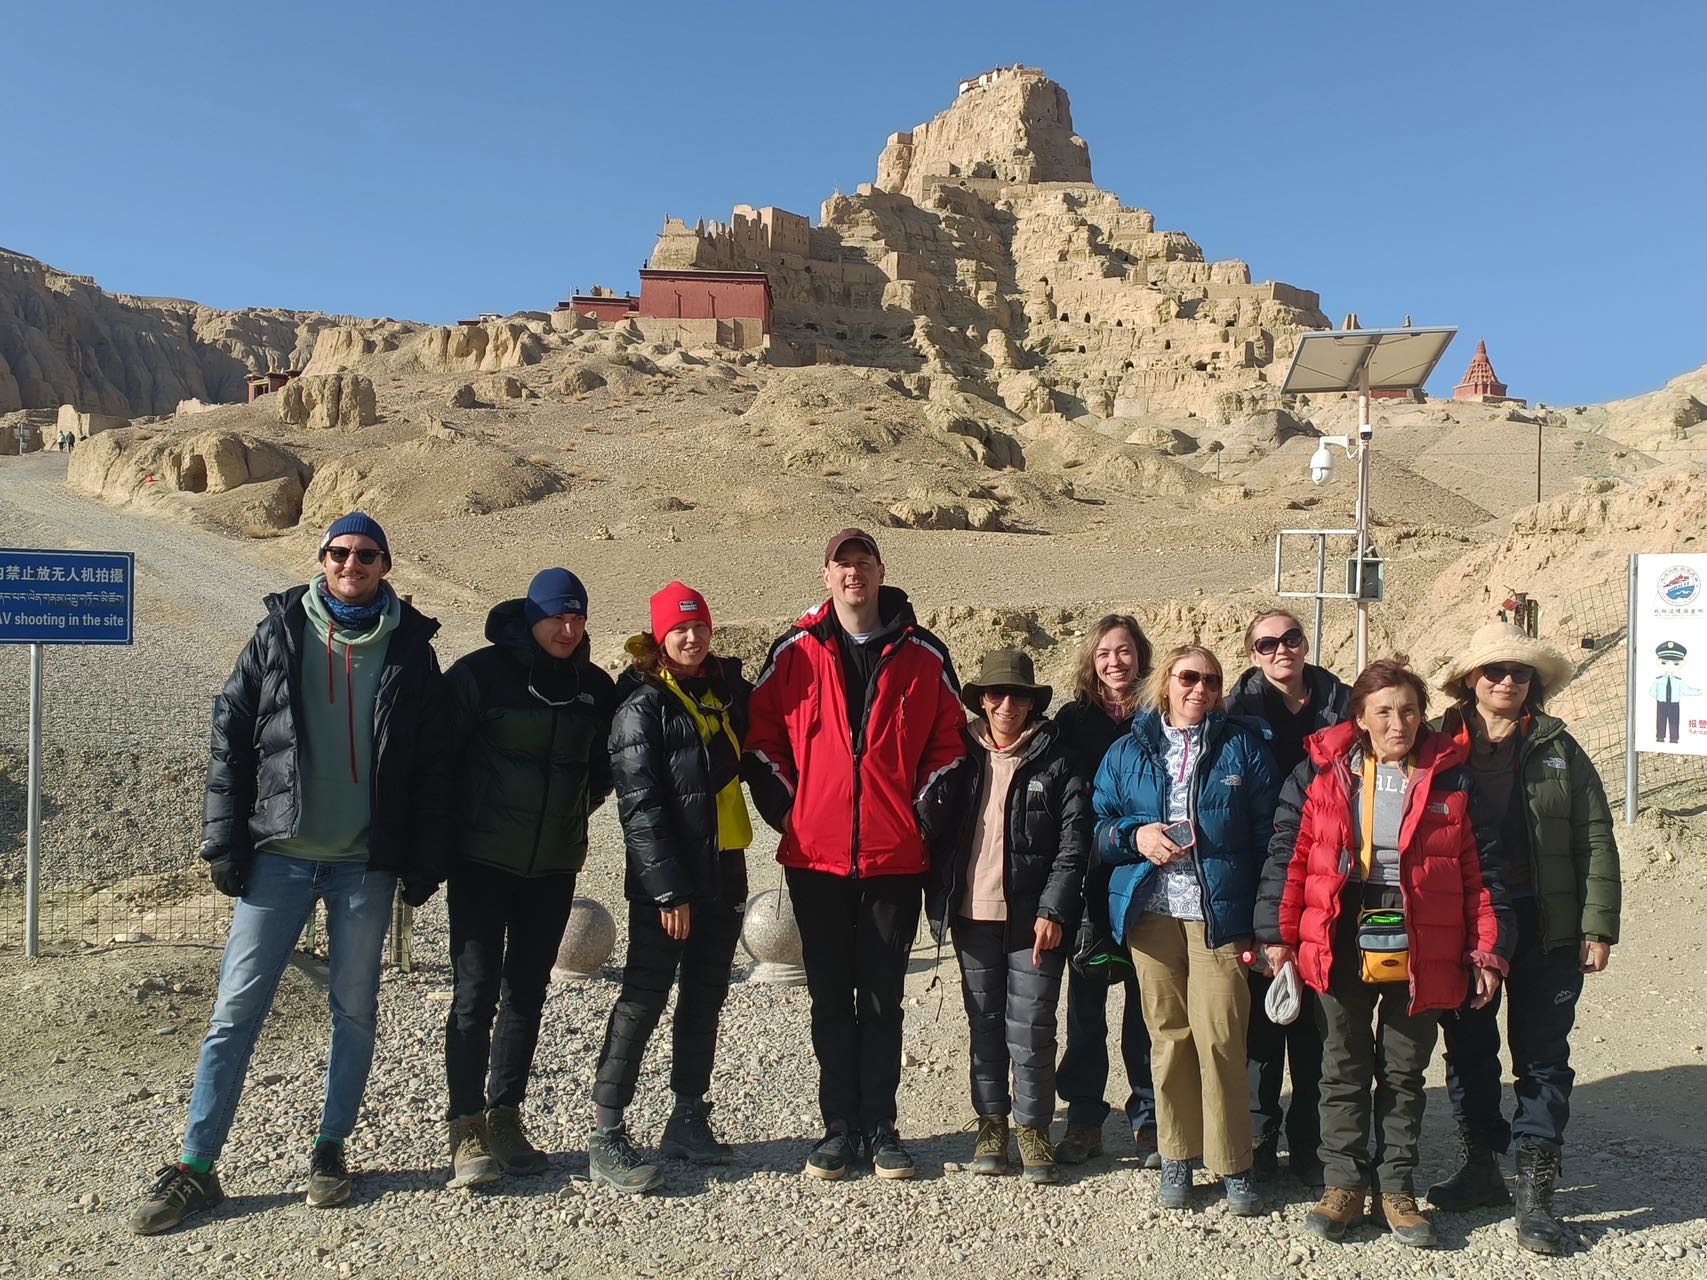 Lhasa, Mt. Kailash, and Guge Kingdom Trek